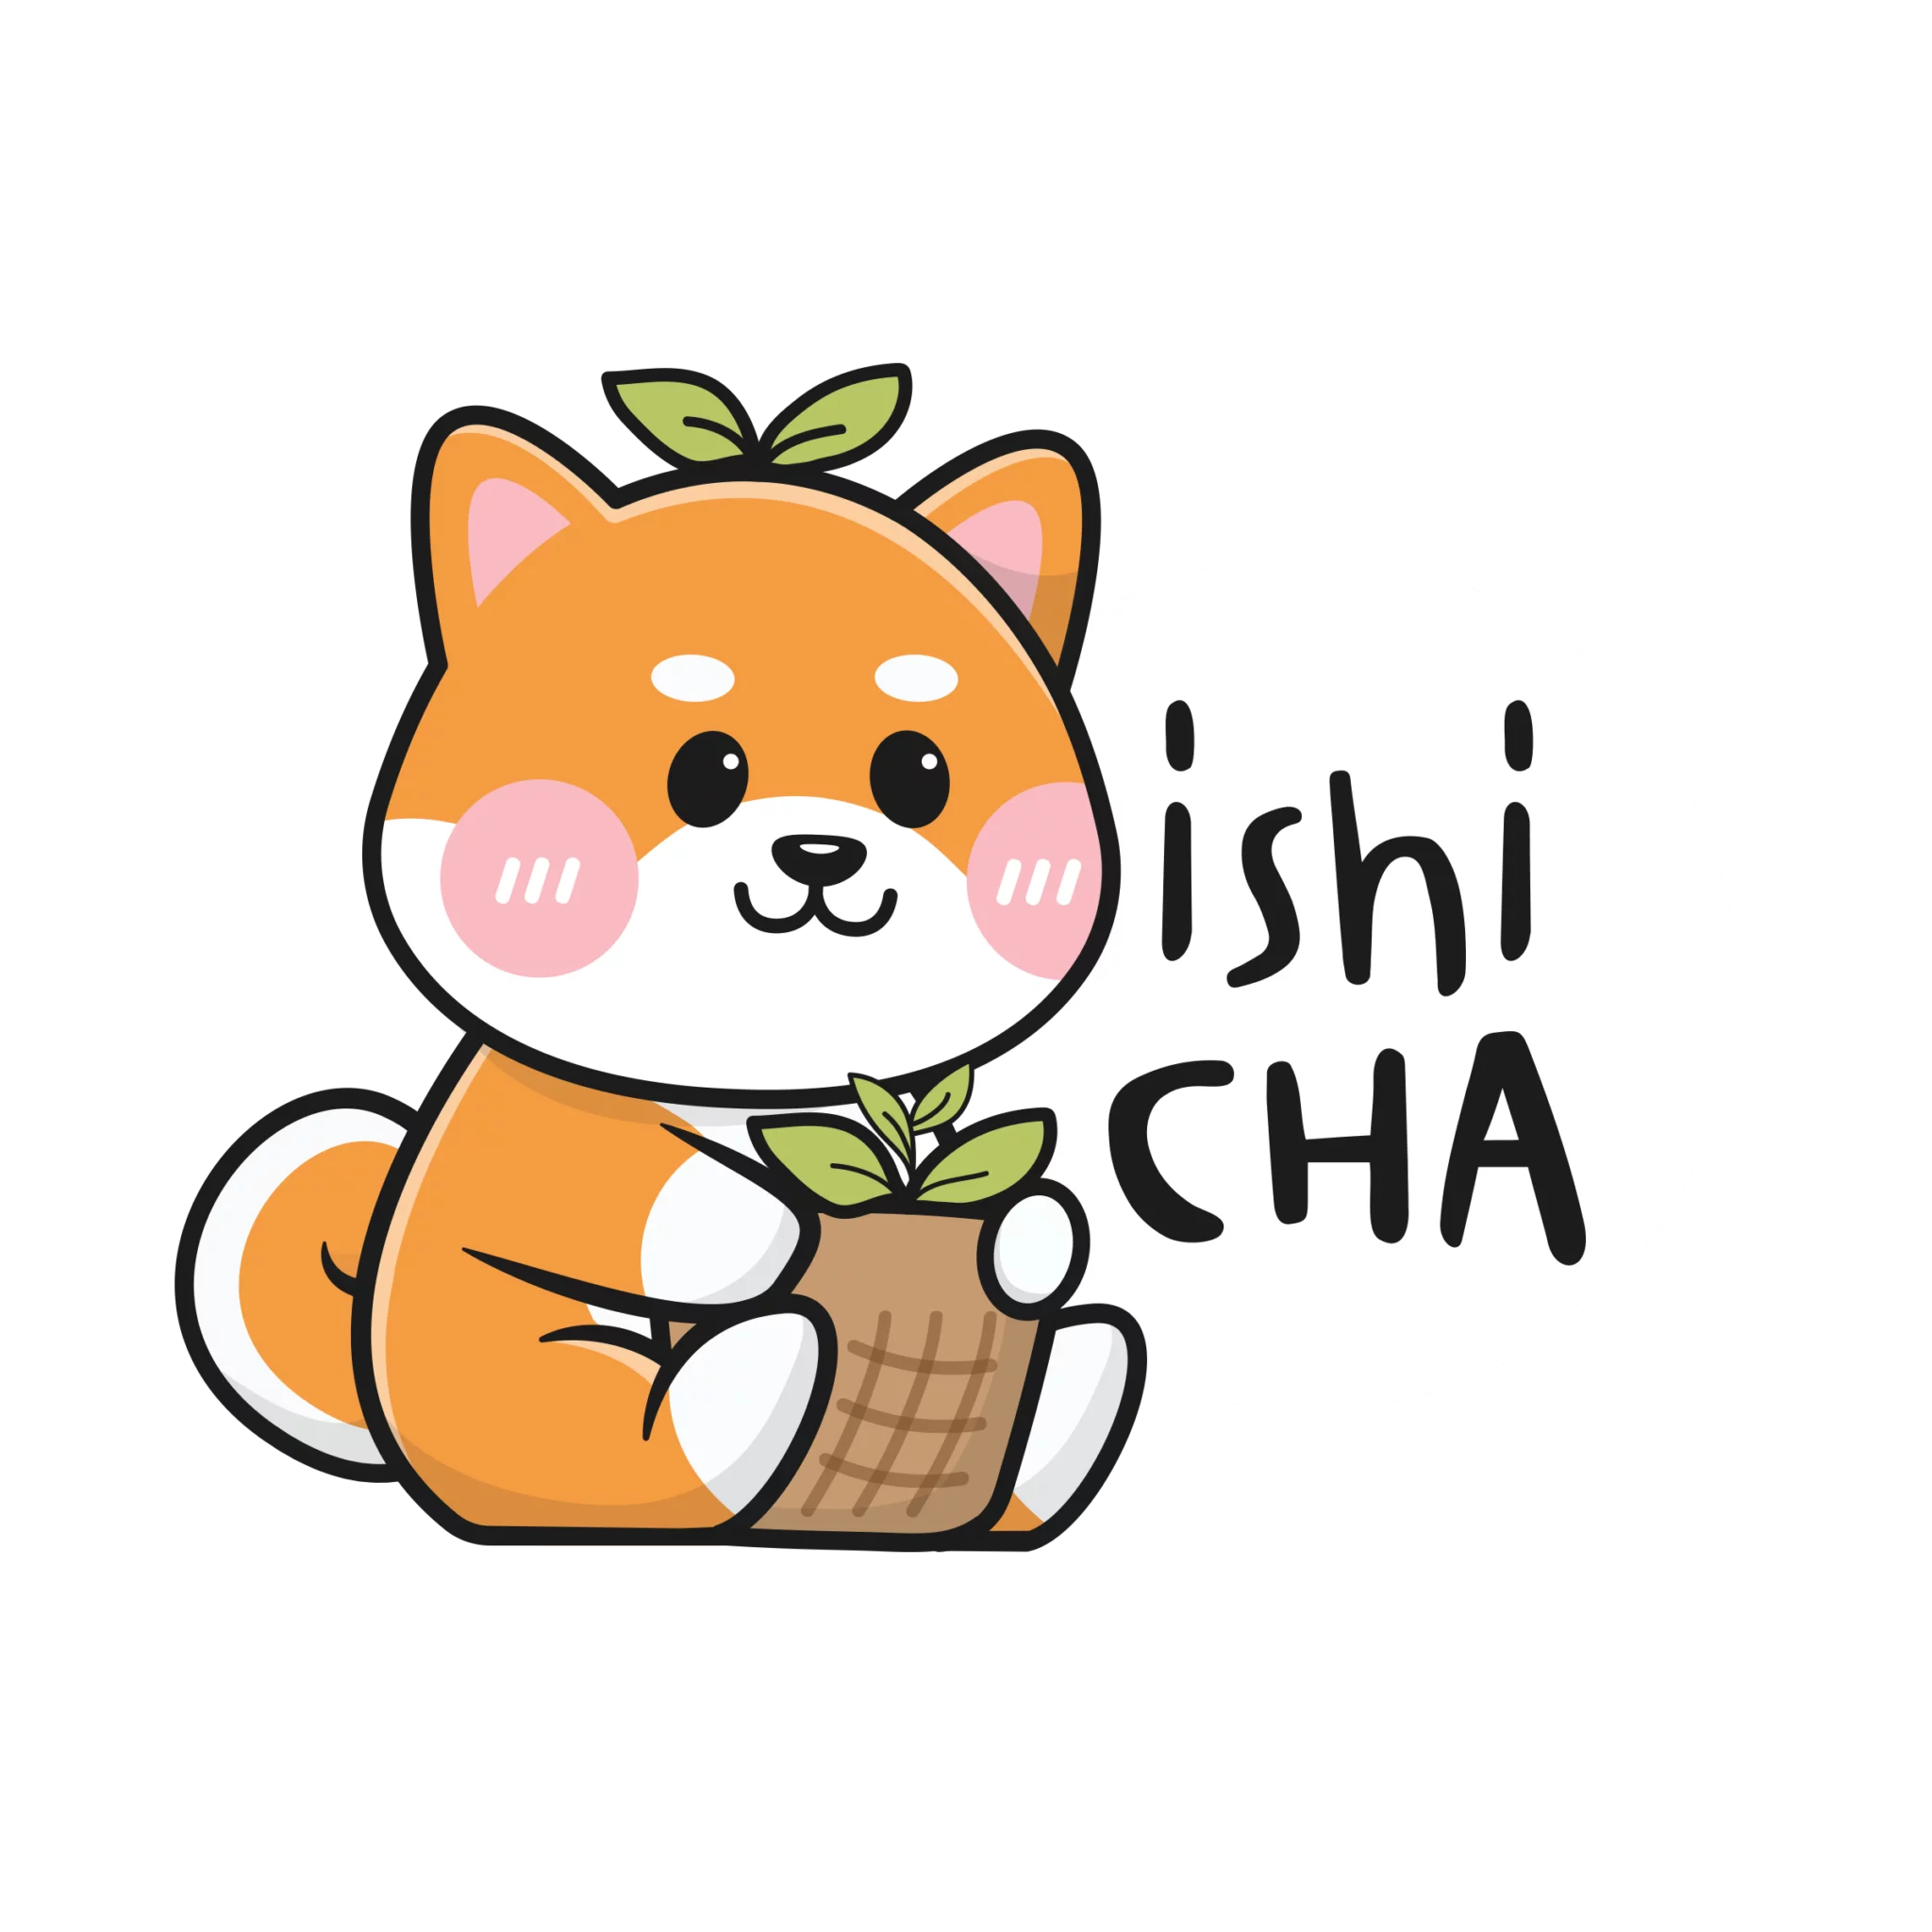 ishicha_shop_logo